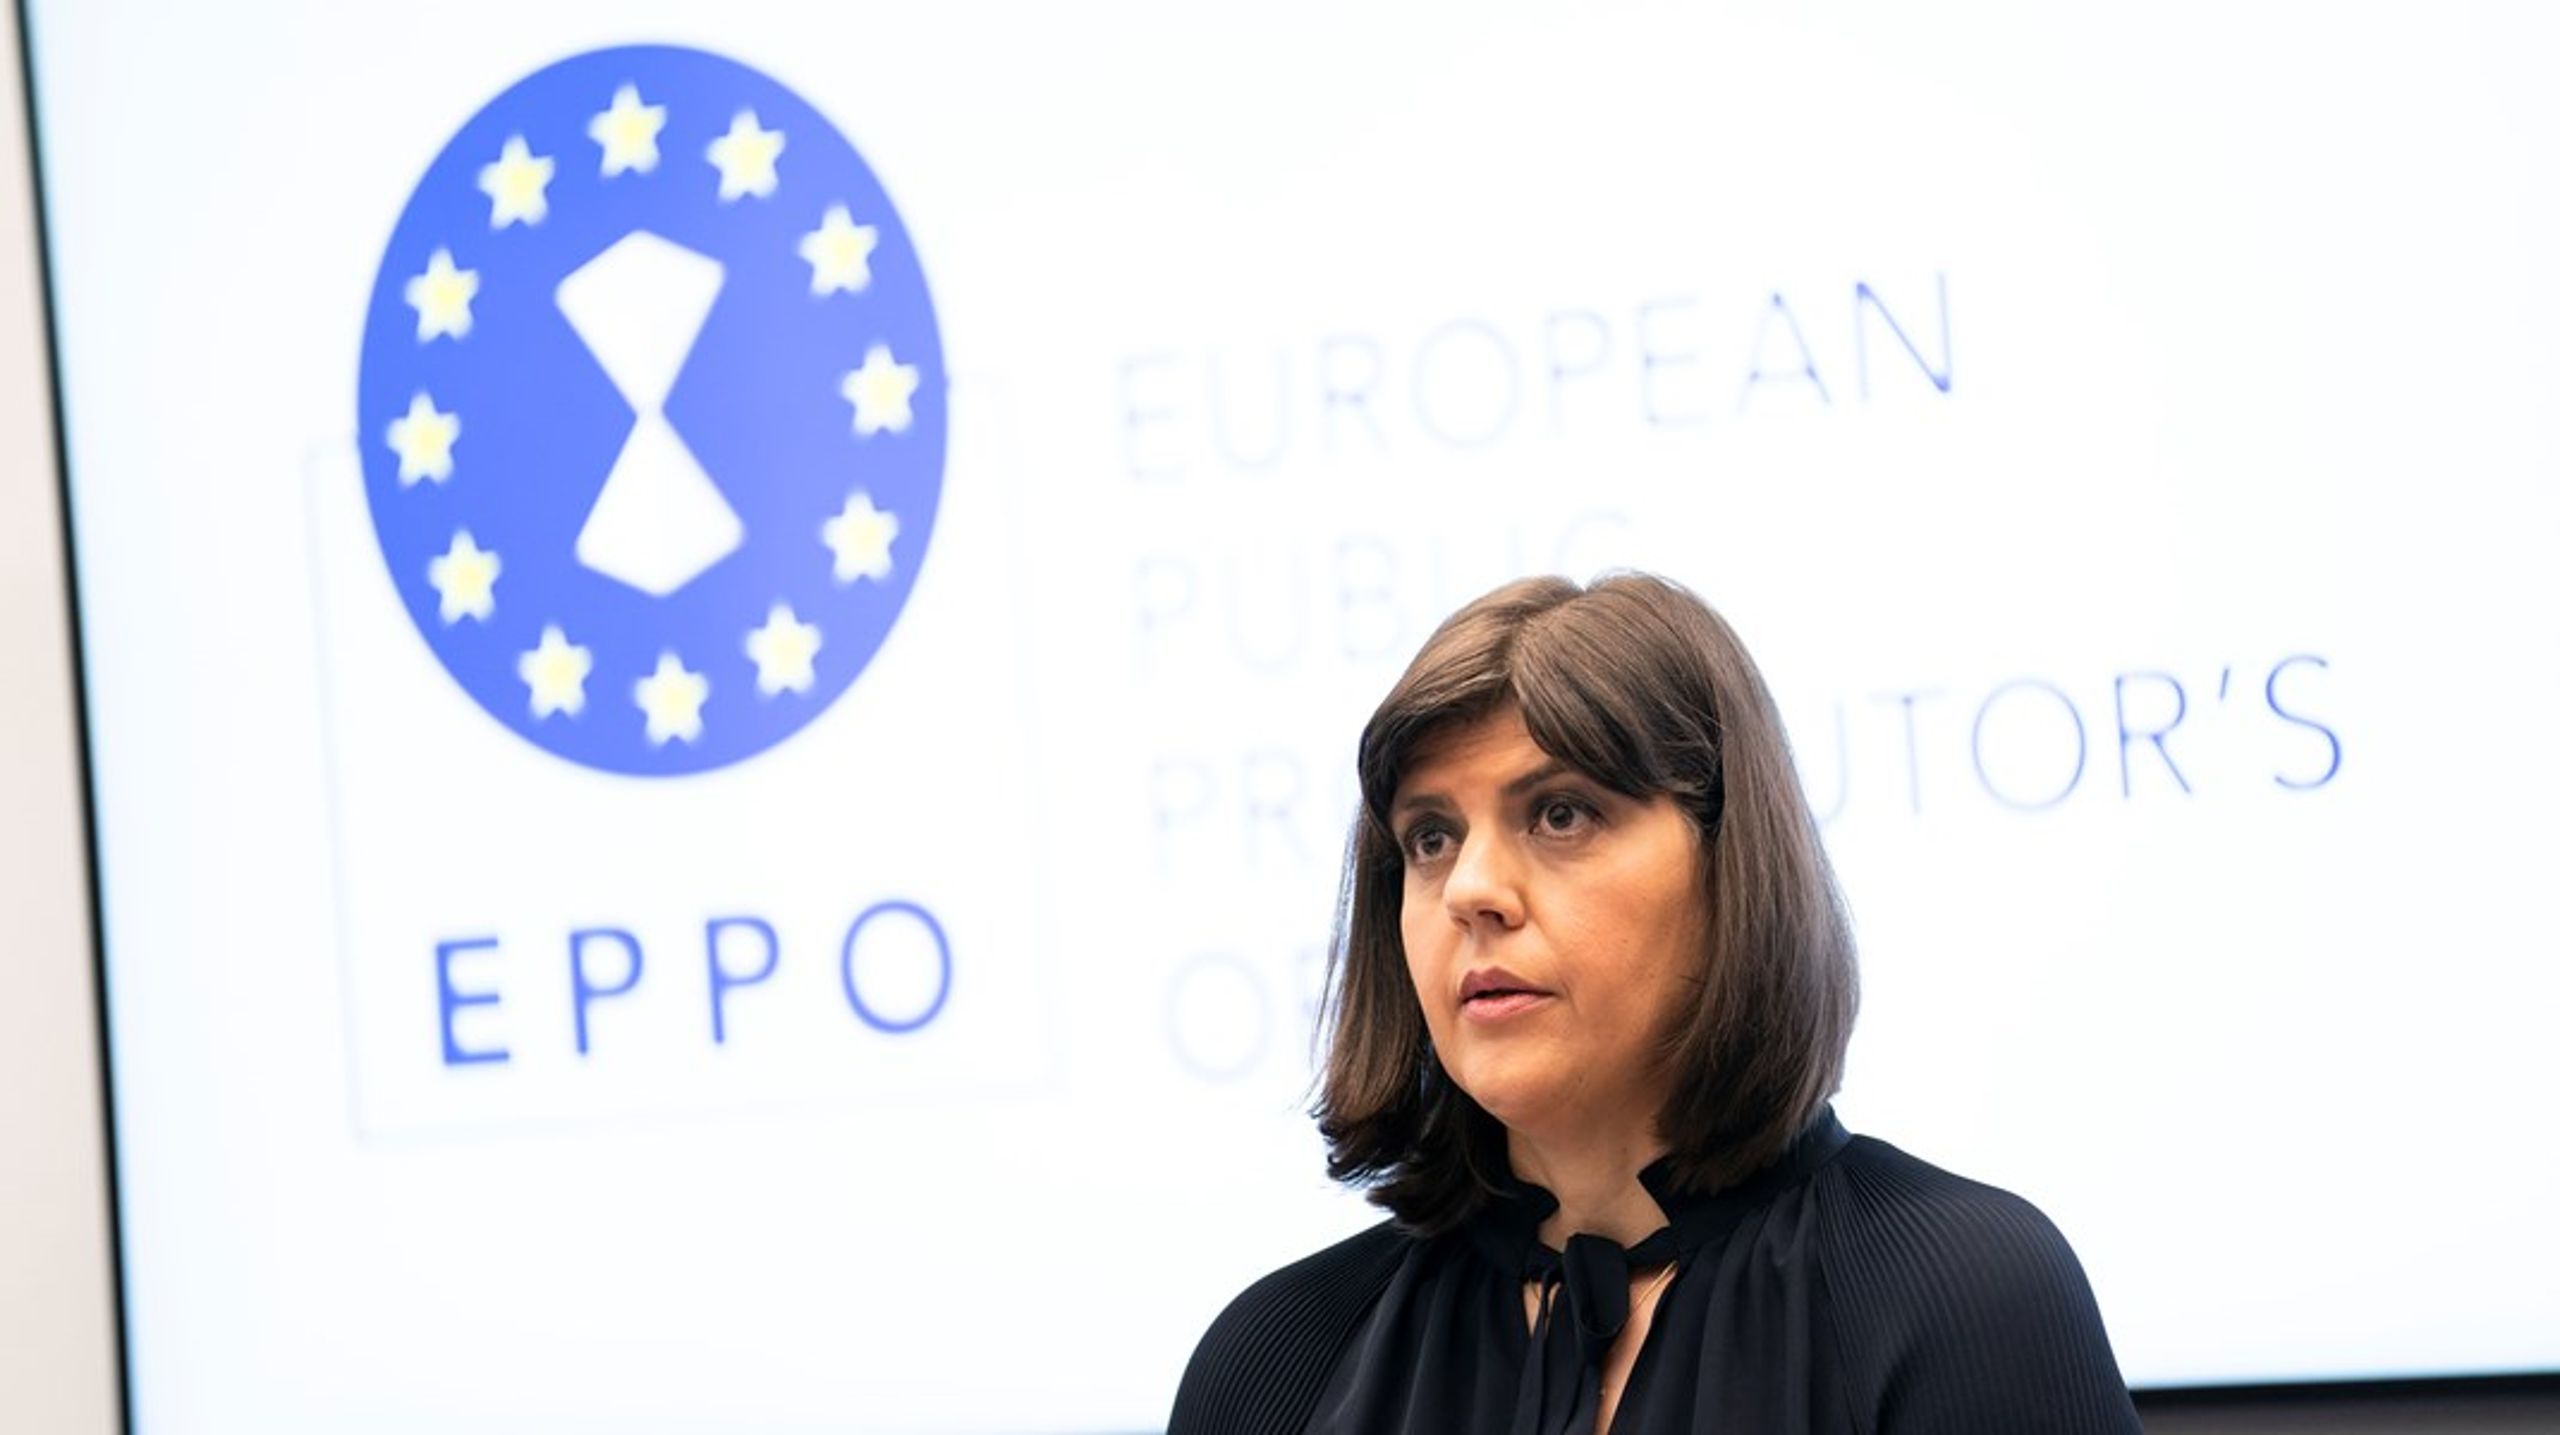 Laura Codruţa&nbsp;Kövesi var en kendt korruptionsjæger i sit hjemland Rumænien, inden hun blev chef for EU's nye anklagemyndighed, EPPO.